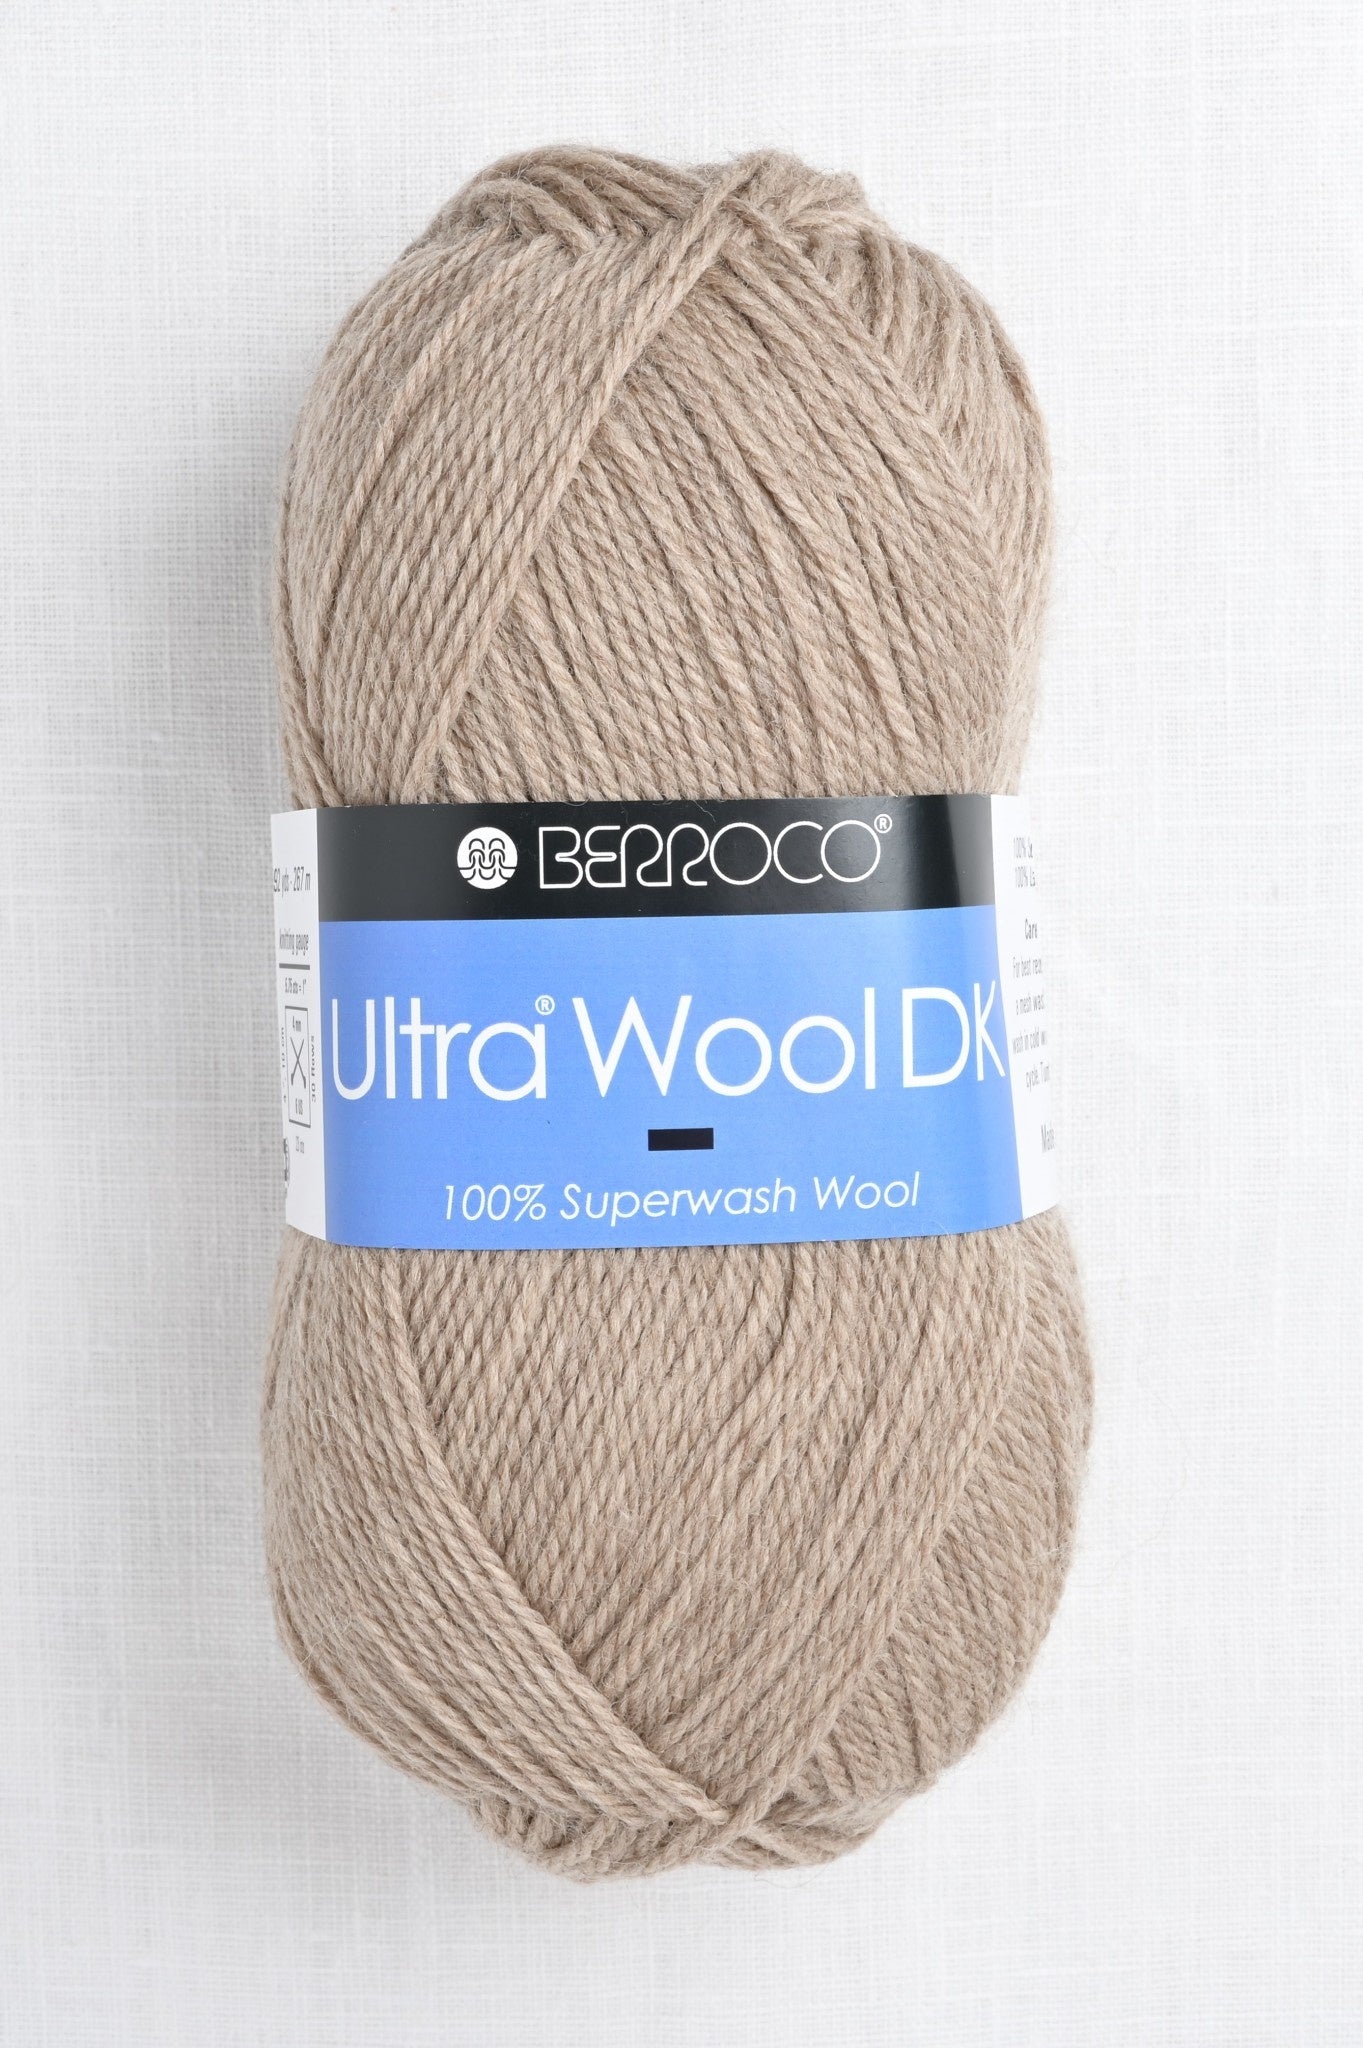 Berroco; Ultra Wool DK; wheat 83103